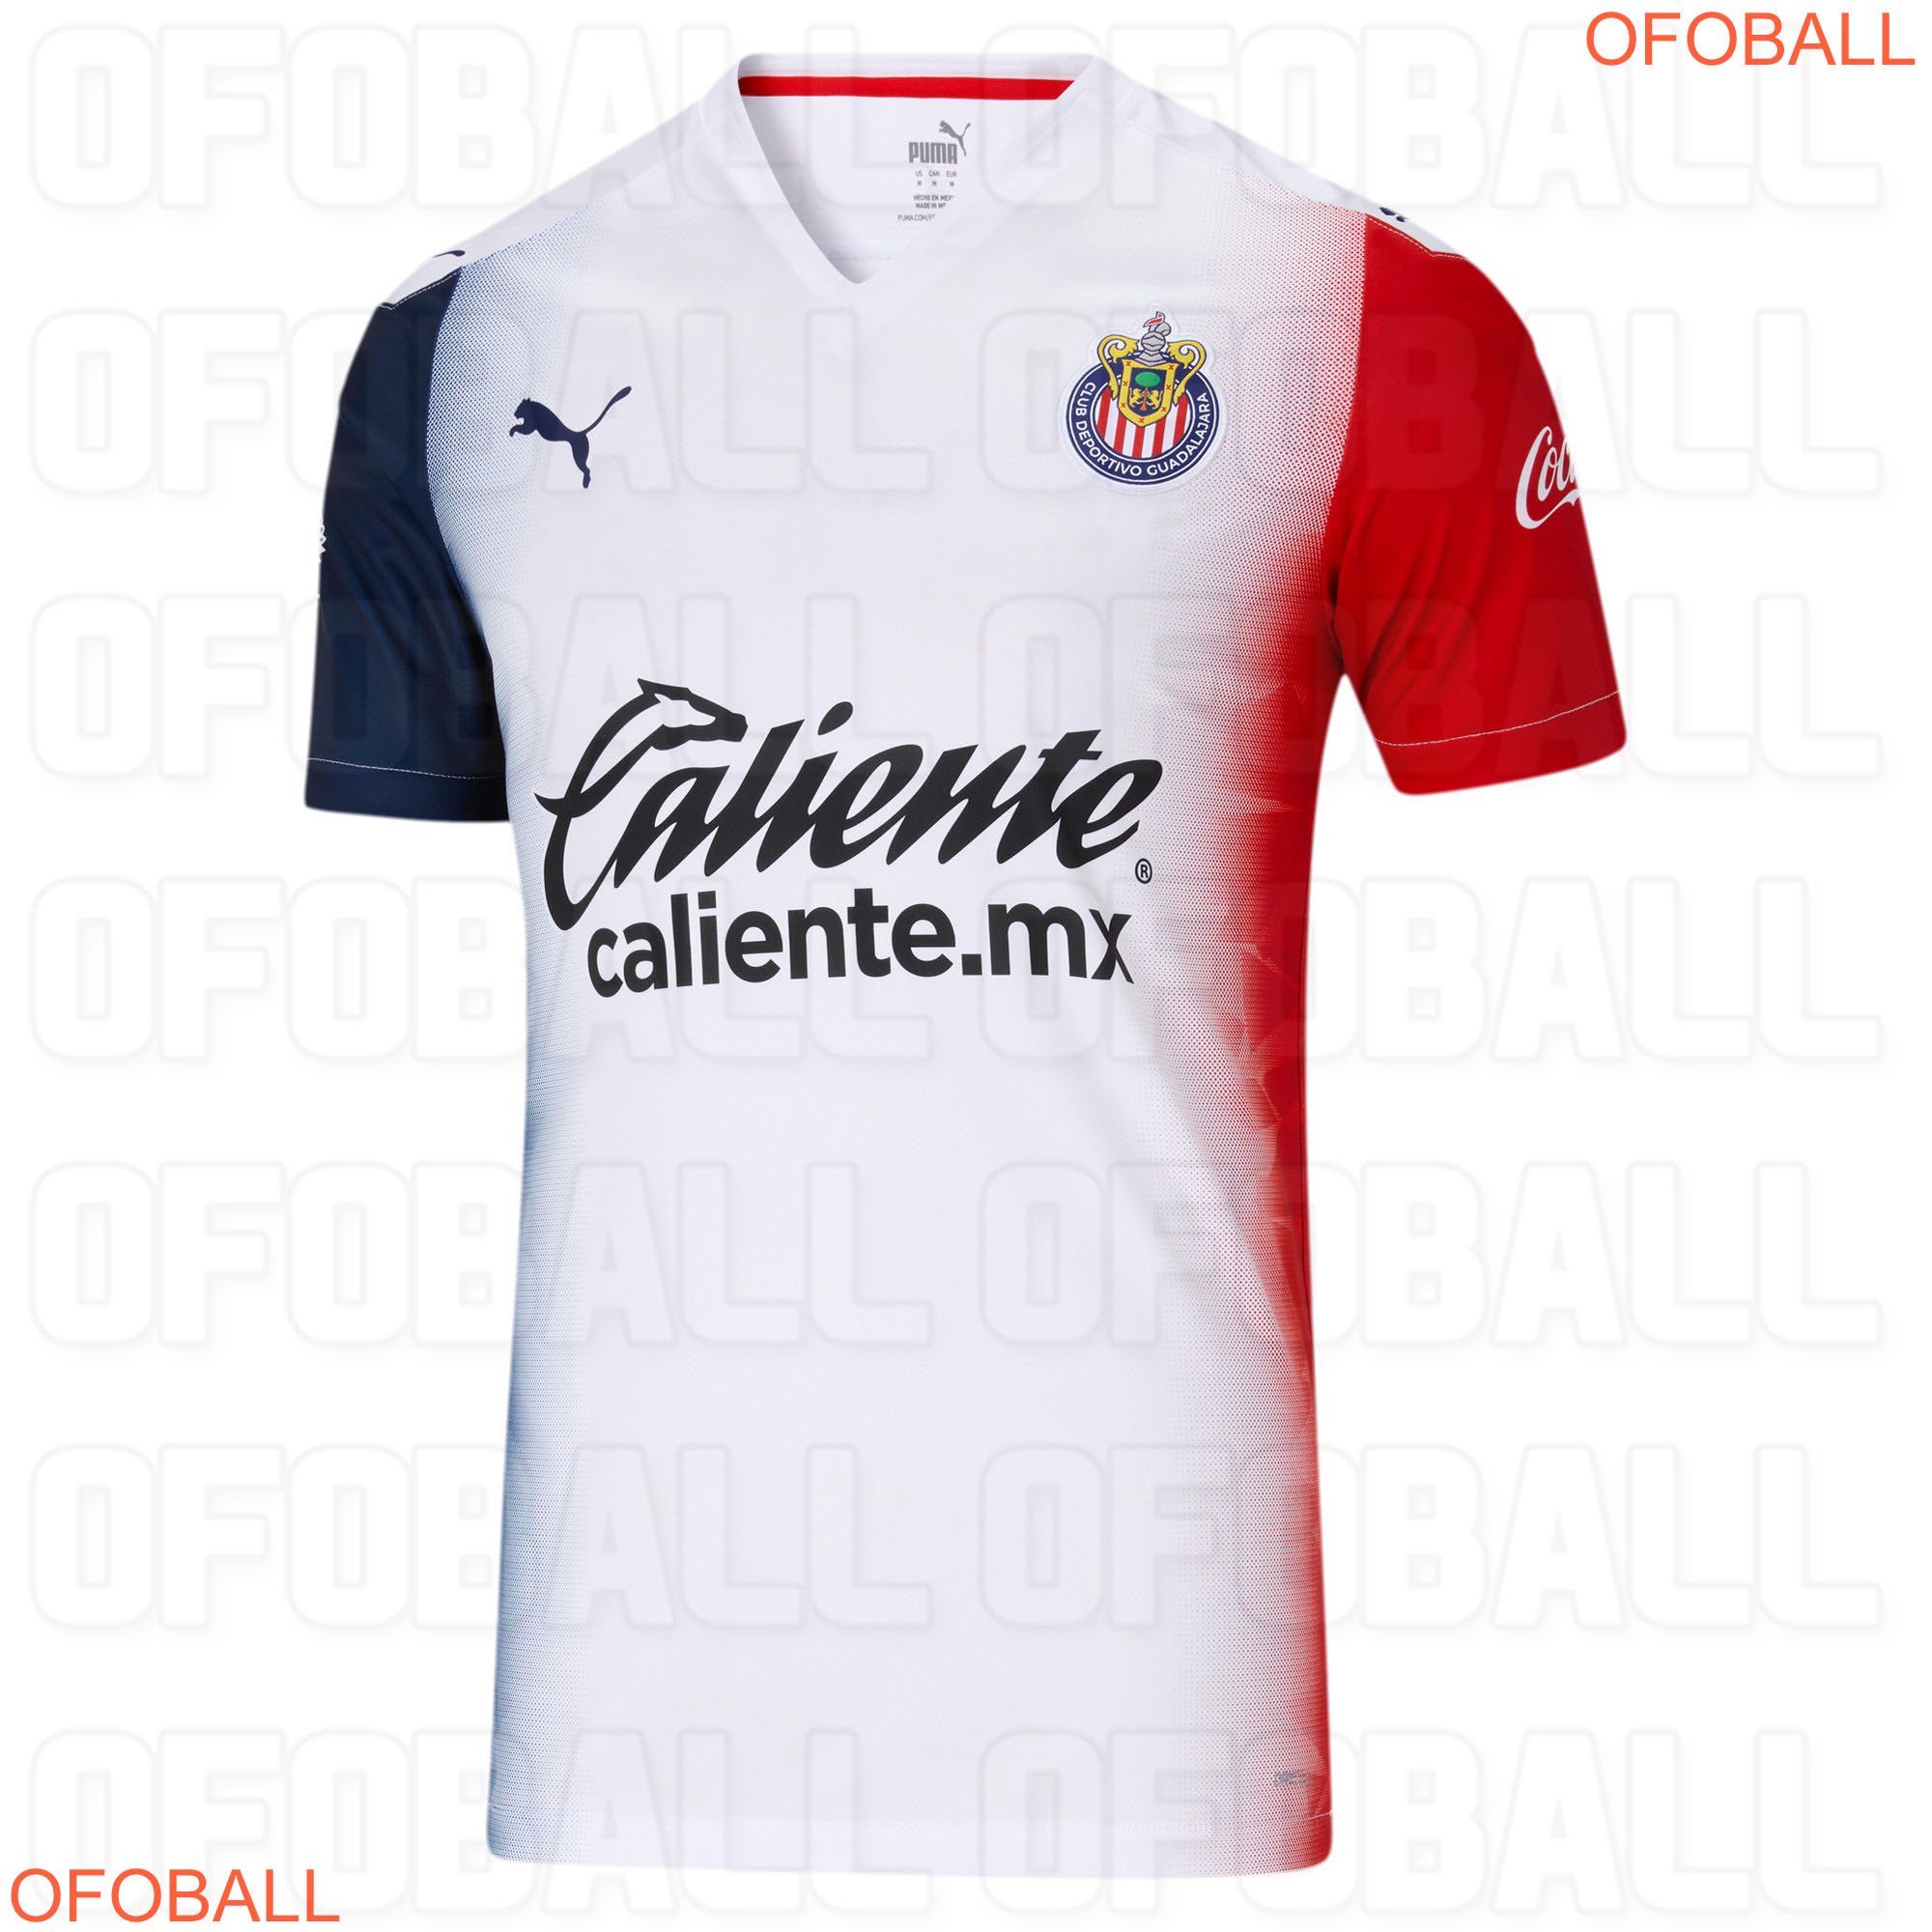 Único y polémico: Este sería el jersey de Chivas como visitante para el Apertura 2020